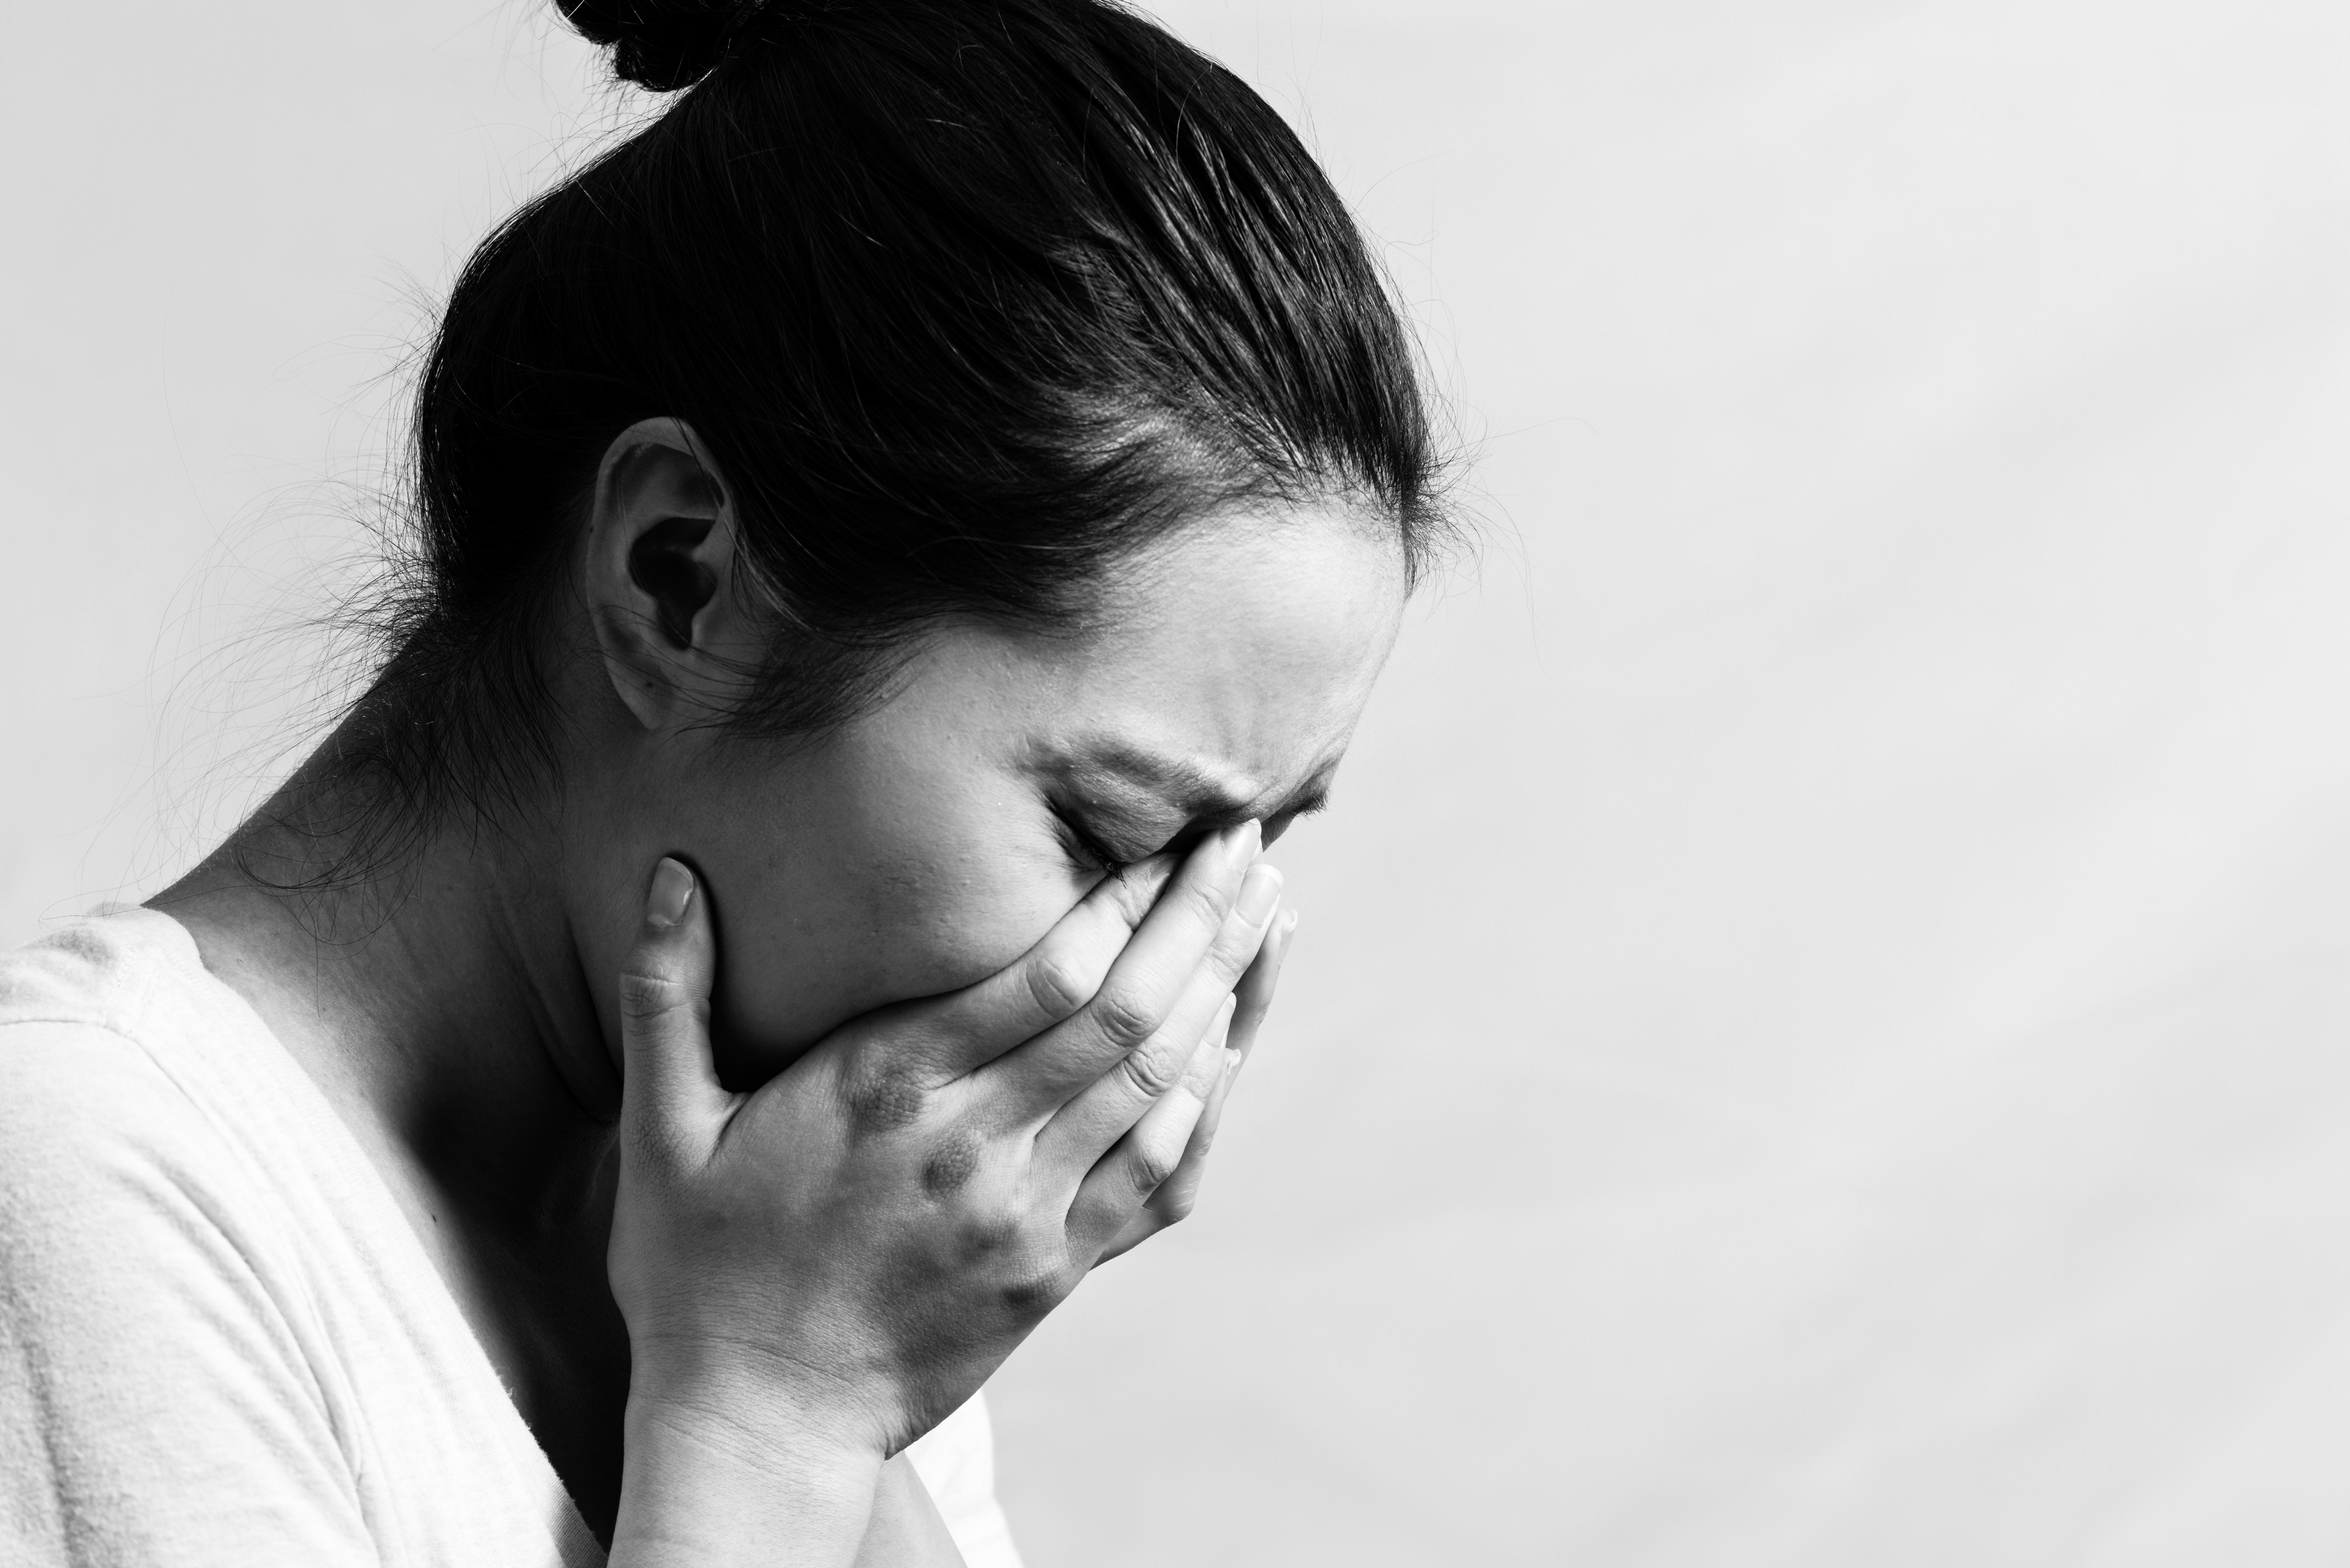 Ein Graustufenfoto von einer weinenden Frau | Quelle: Shutterstock